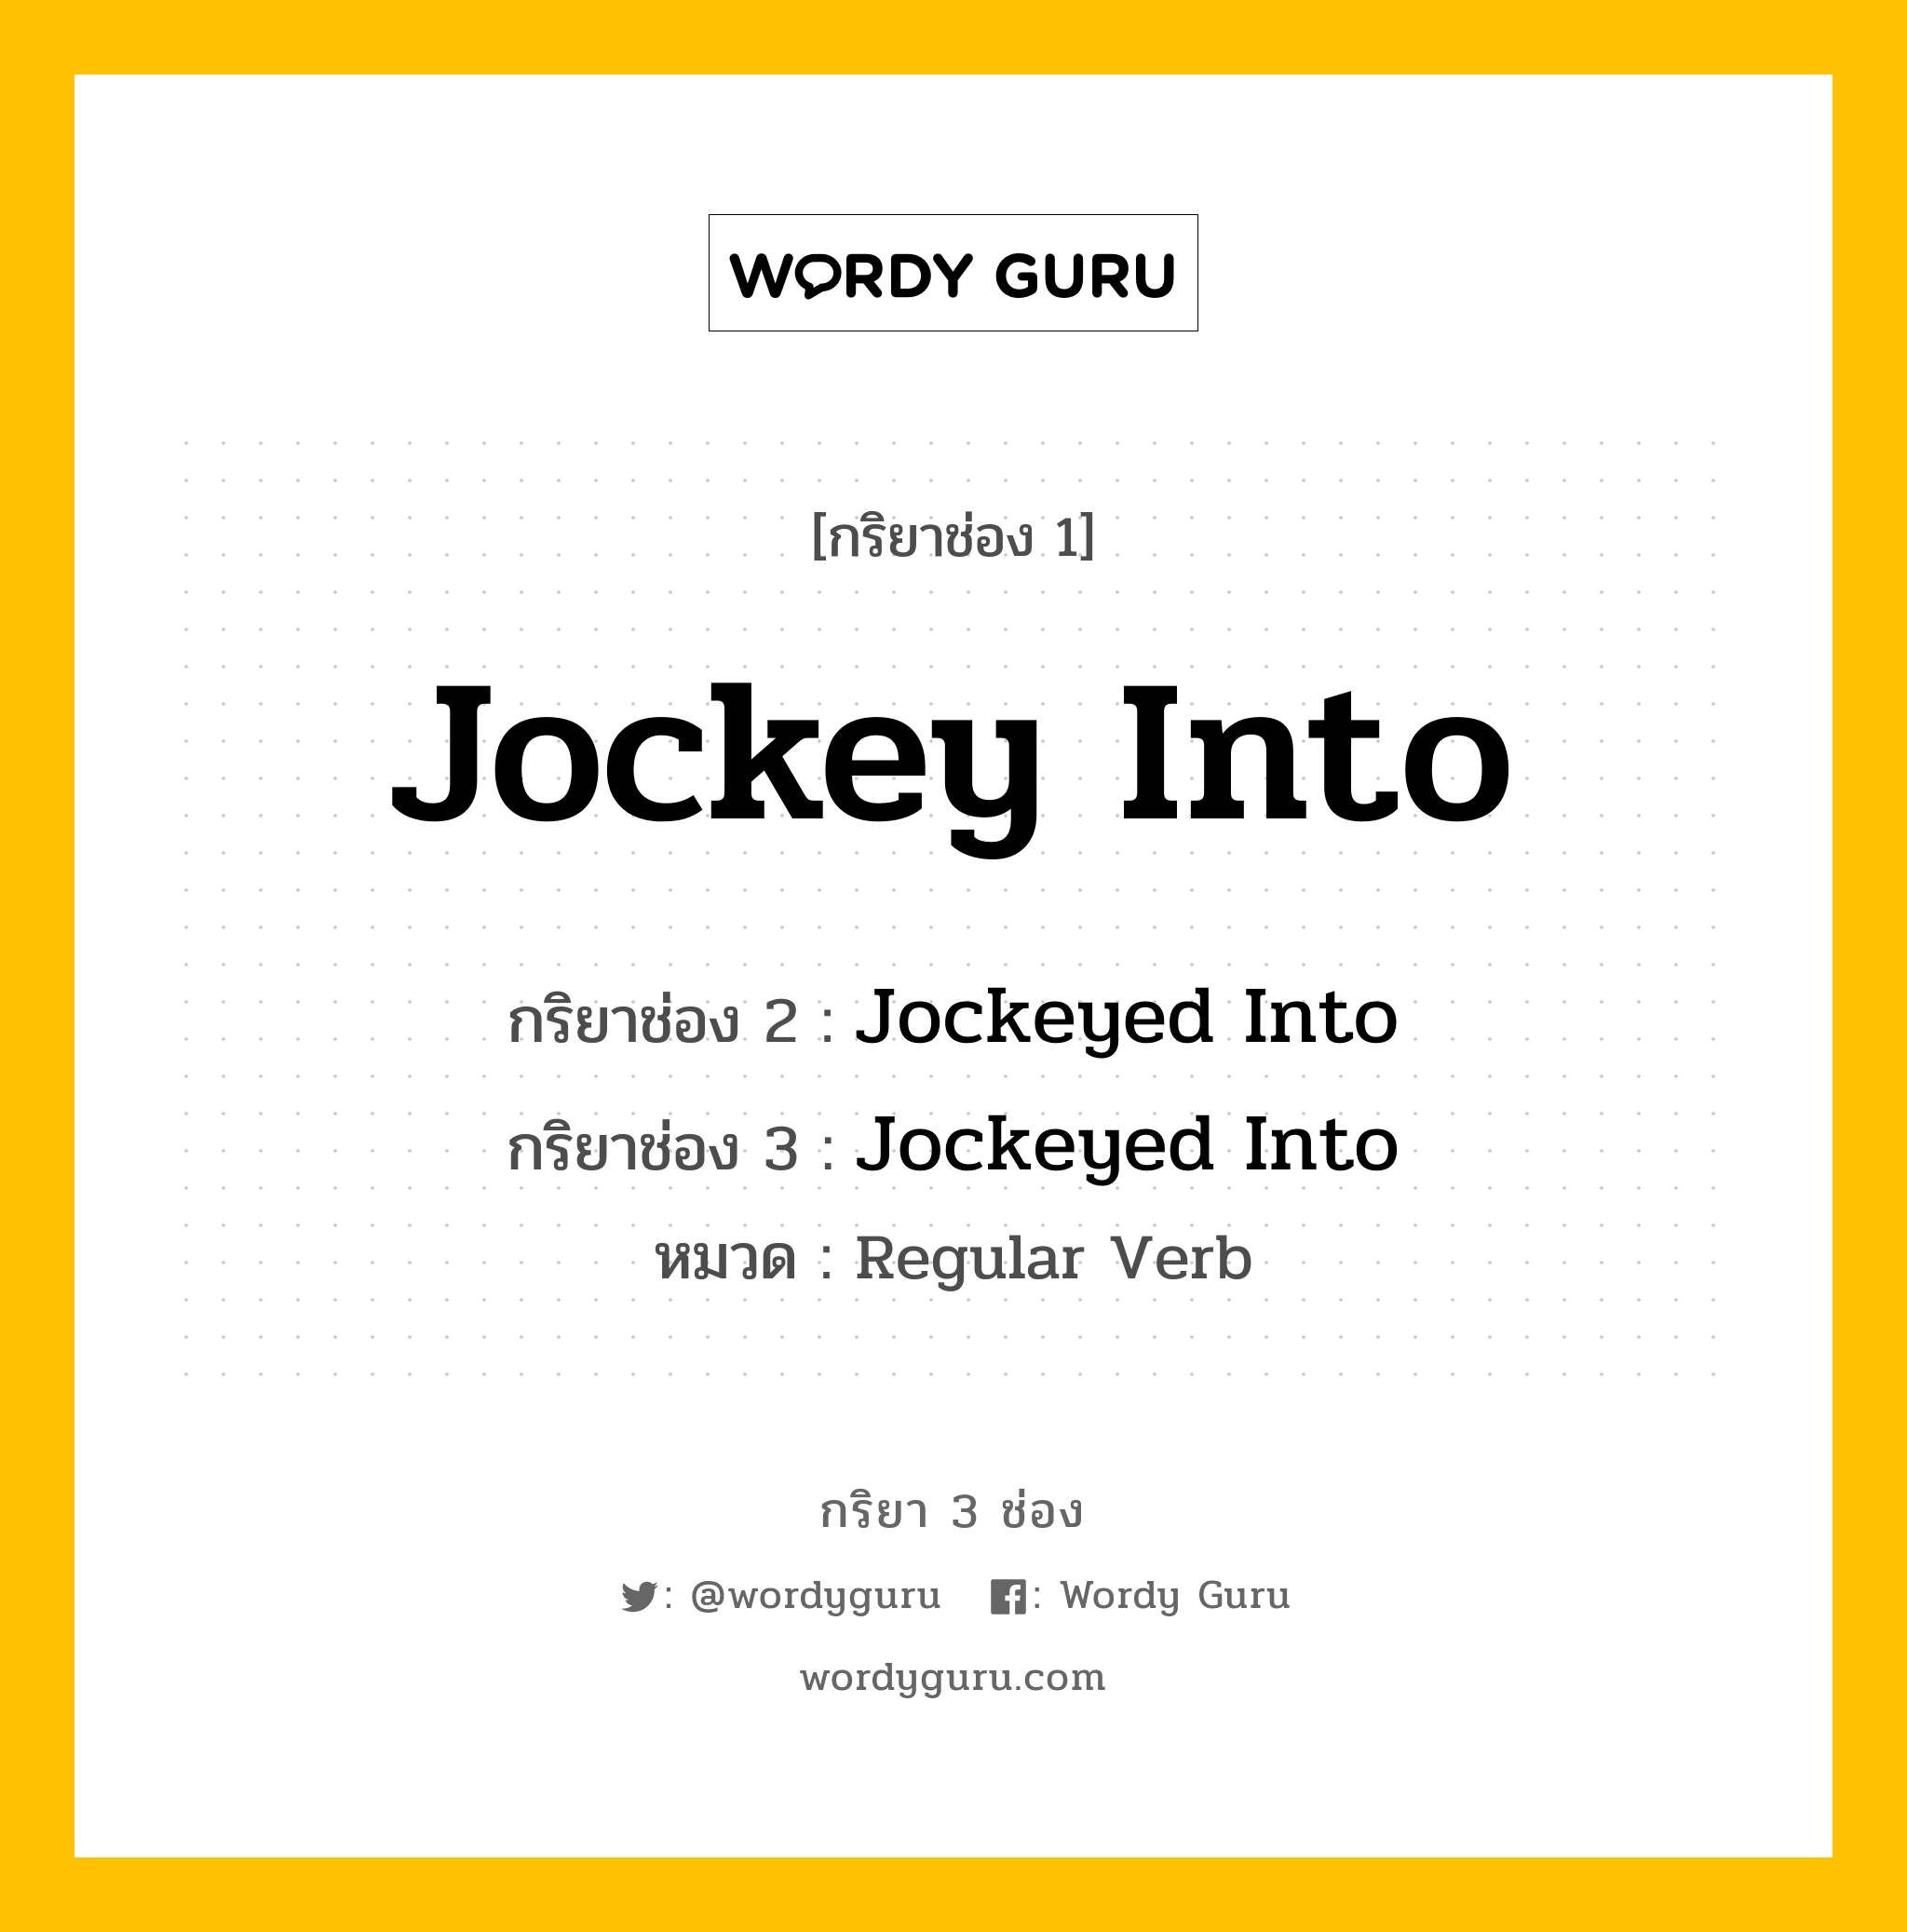 กริยา 3 ช่อง: Jockey Into ช่อง 2 Jockey Into ช่อง 3 คืออะไร, กริยาช่อง 1 Jockey Into กริยาช่อง 2 Jockeyed Into กริยาช่อง 3 Jockeyed Into หมวด Regular Verb หมวด Regular Verb